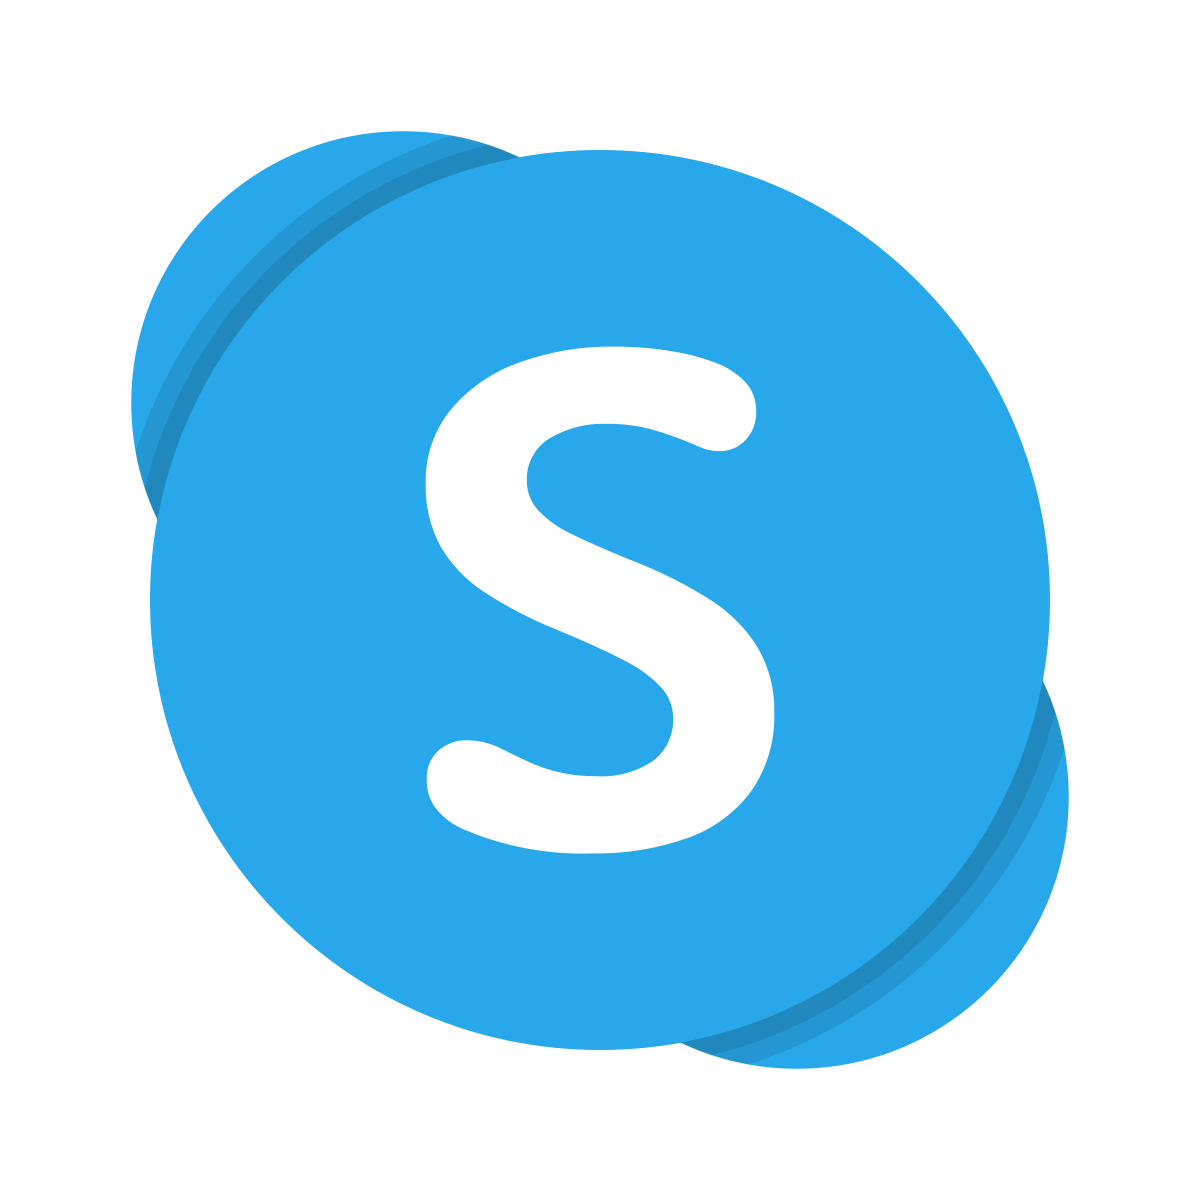 Skype no es una LMS, pero viene integrada en algunas plataformas virtuales de aprendizaje